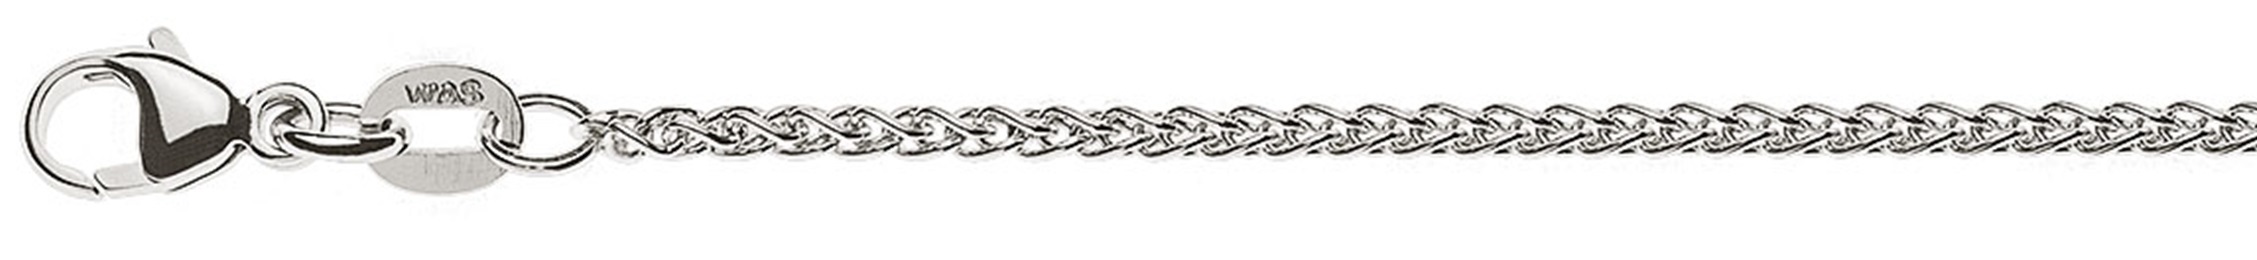 AURONOS Prestige Necklace white gold 18K cable chain 38cm 1.65mm